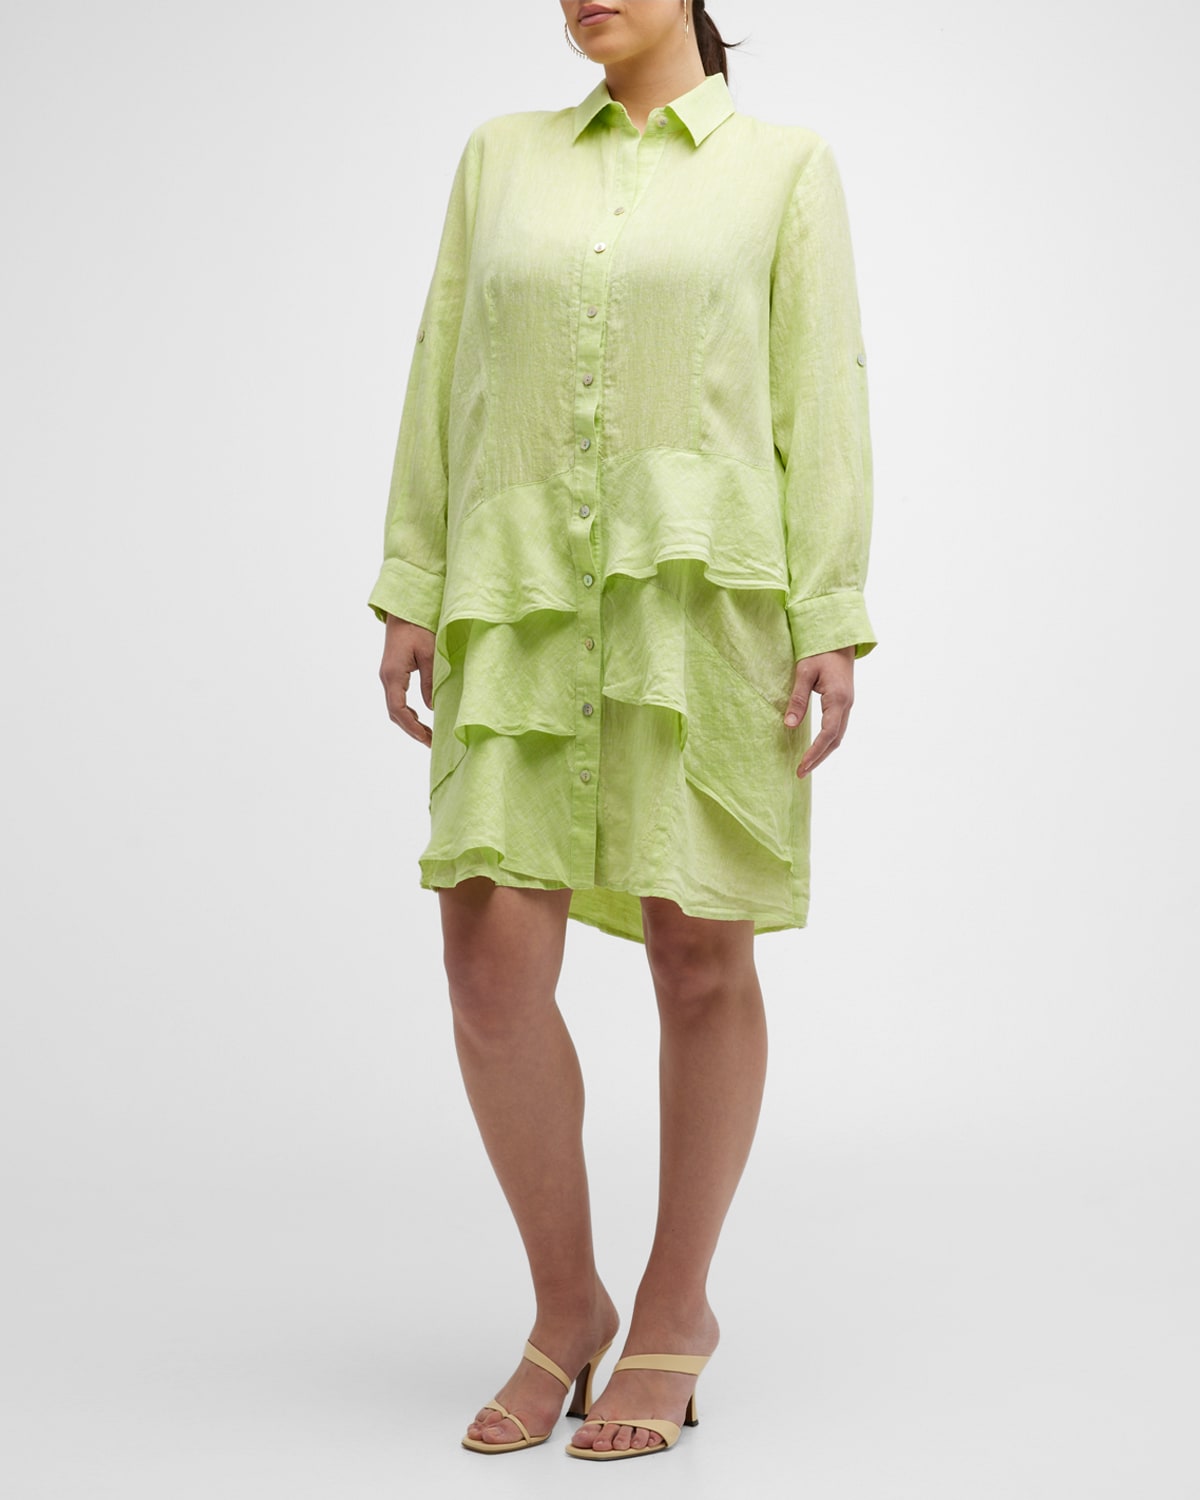 Finley Plus Size Jenna Ruffle-Trim Shirtdress